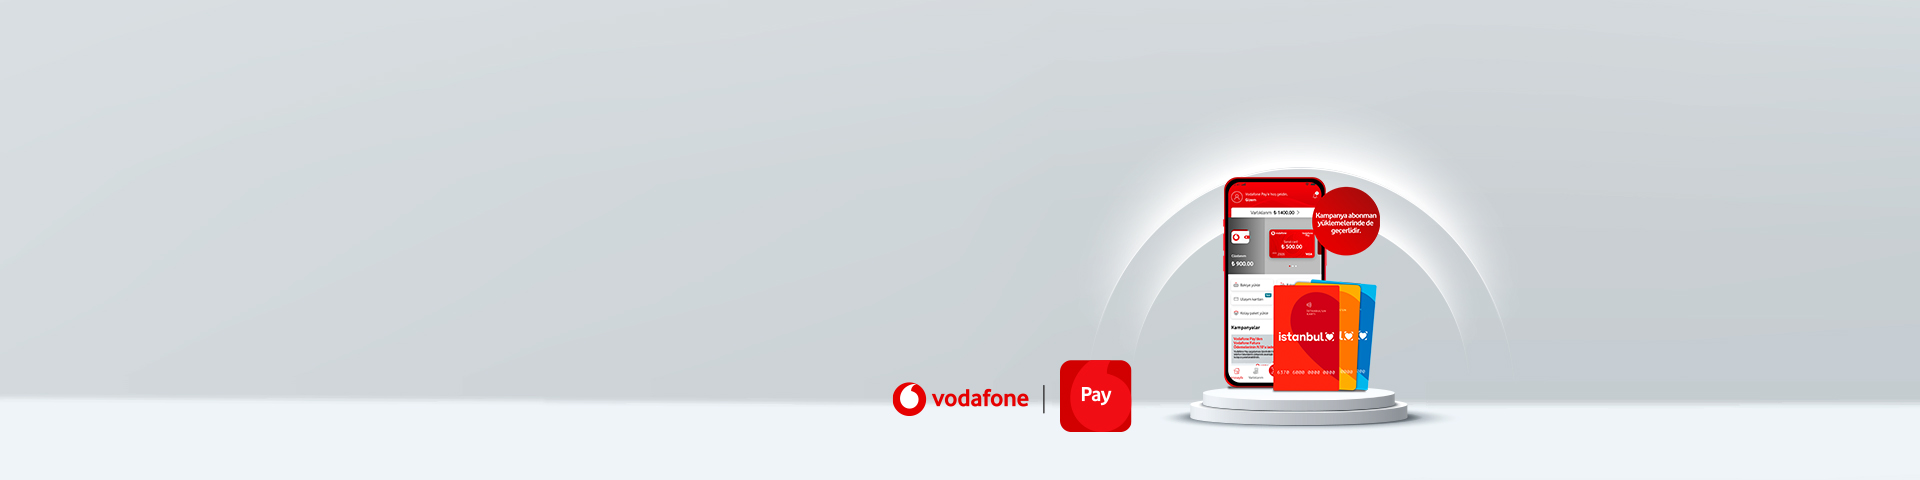 Vodafone Paylilere İstanbulkart yüklemelerinde nakit iade fırsatı!